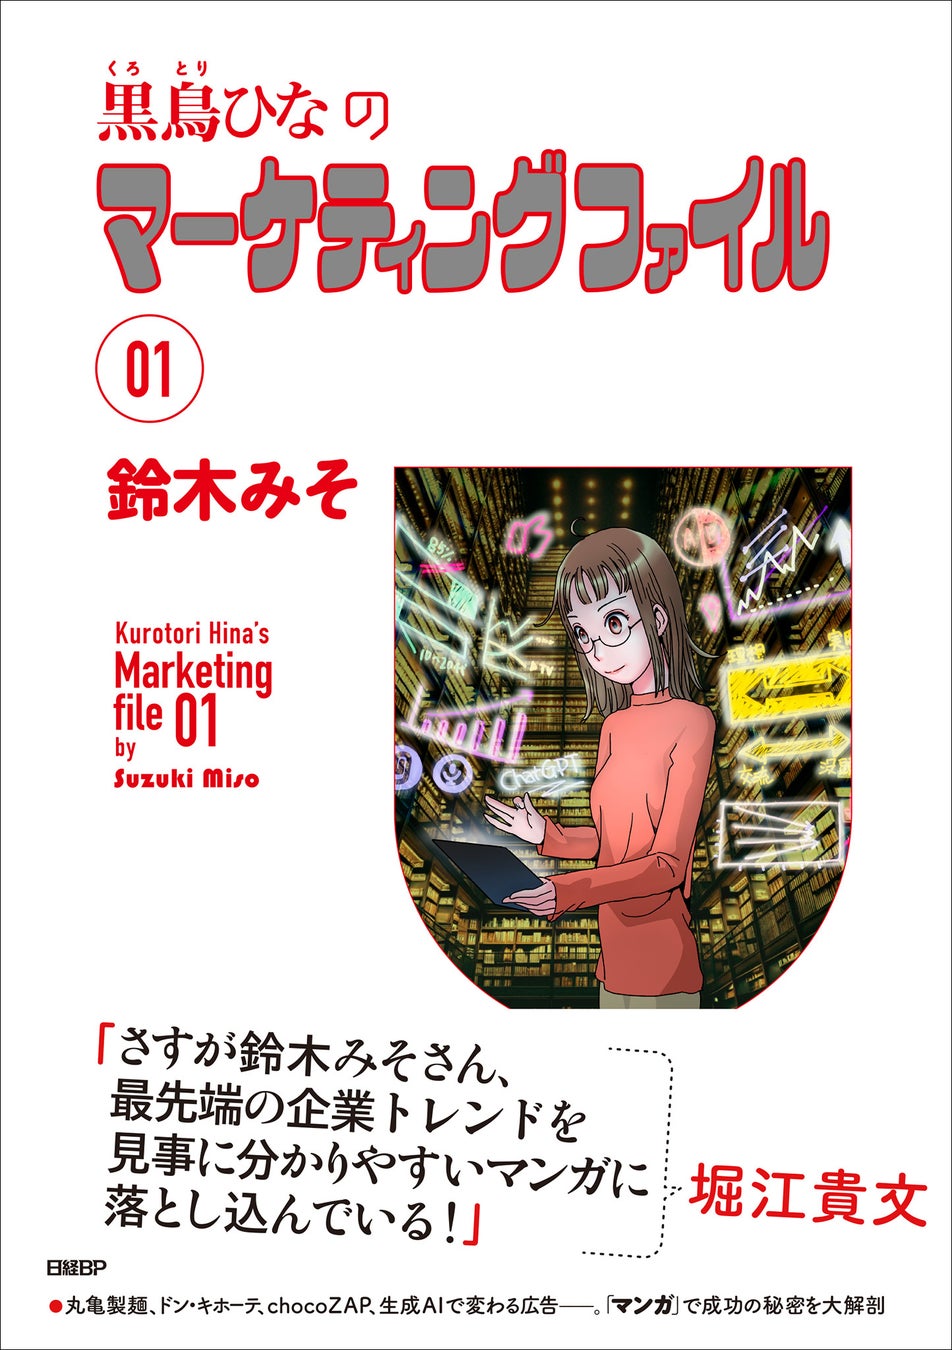 鈴木みそ氏が描く、マンガでマーケティングを学ぶ新刊『黒鳥ひなのマーケティングファイル 01』発売